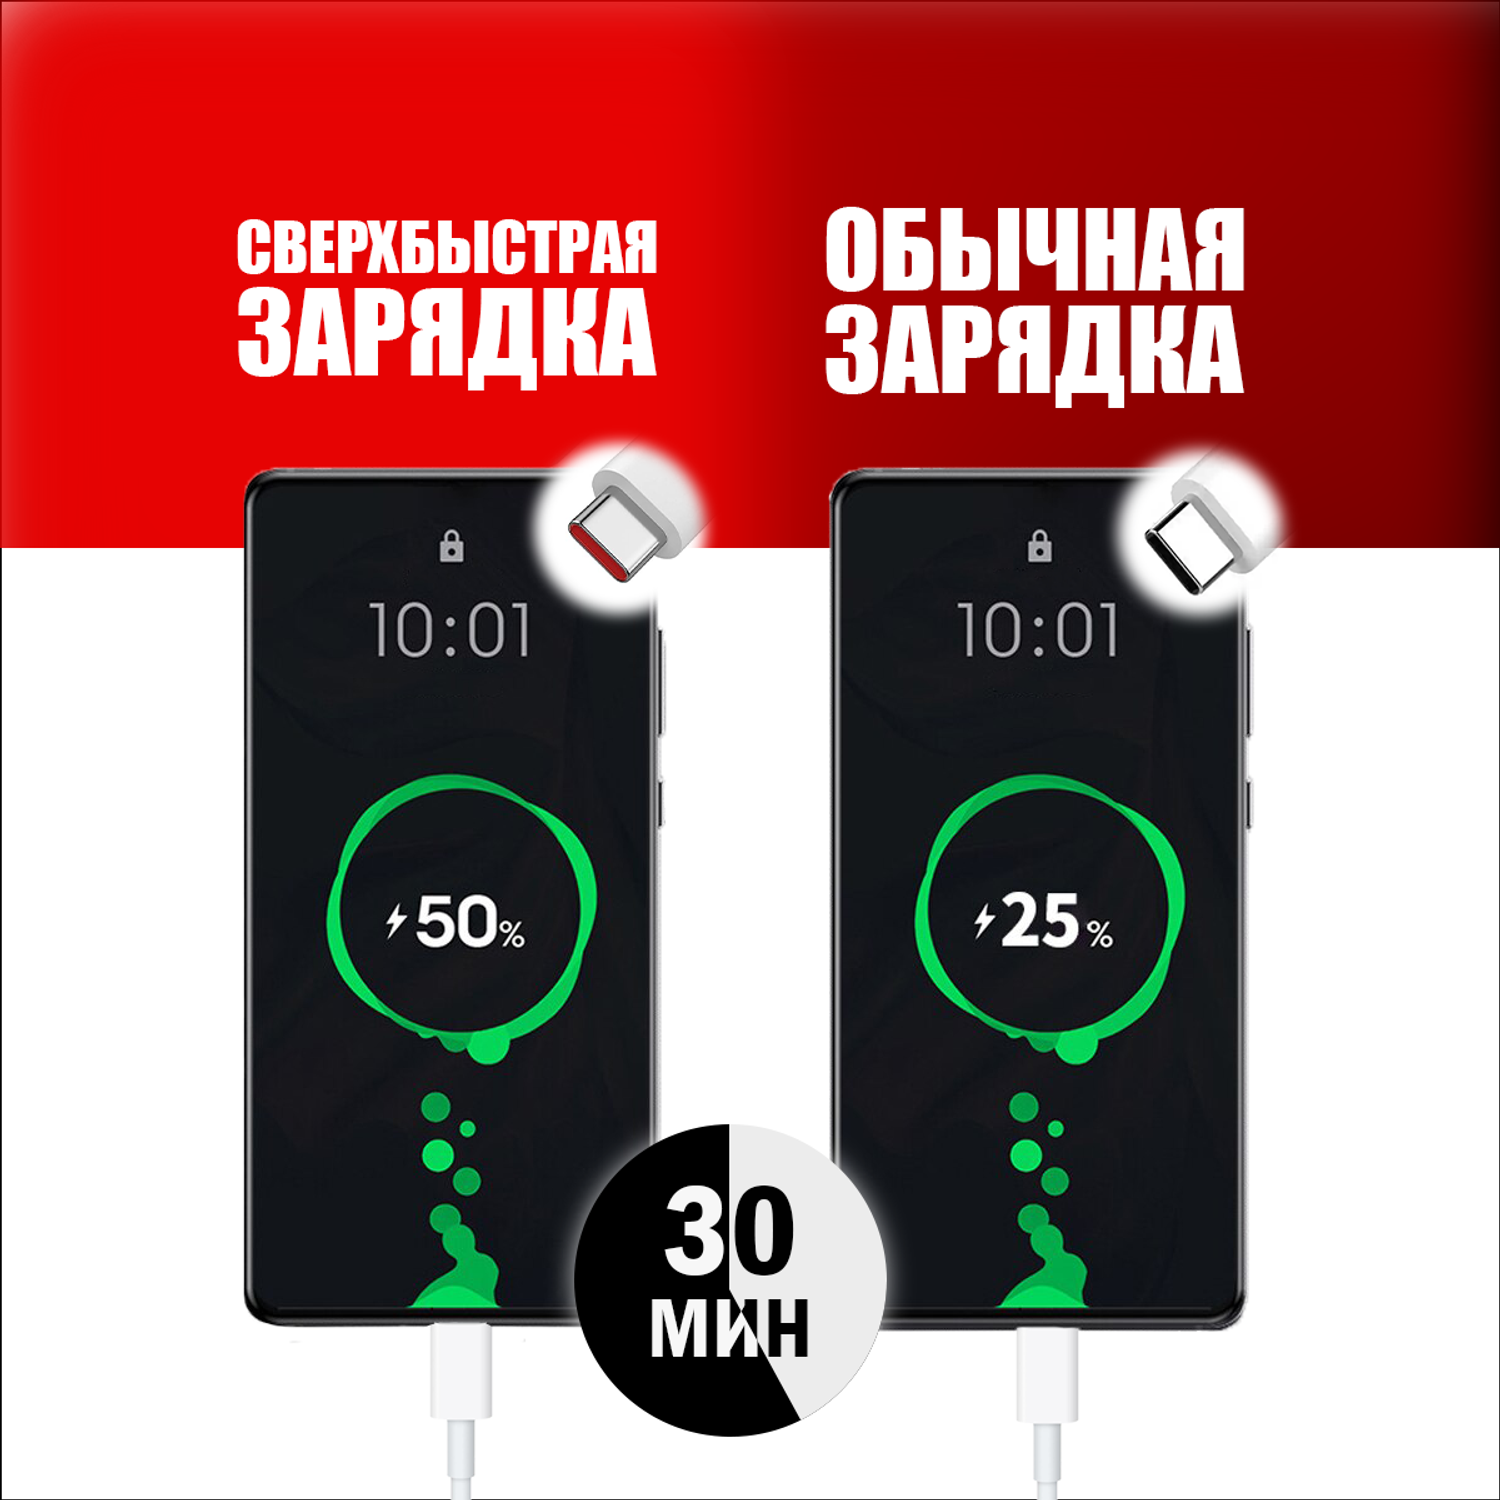 Кабель для мобильных устройств QUIVIRA USB Type C быстрая зарядка Fast charging 6A - фото 2